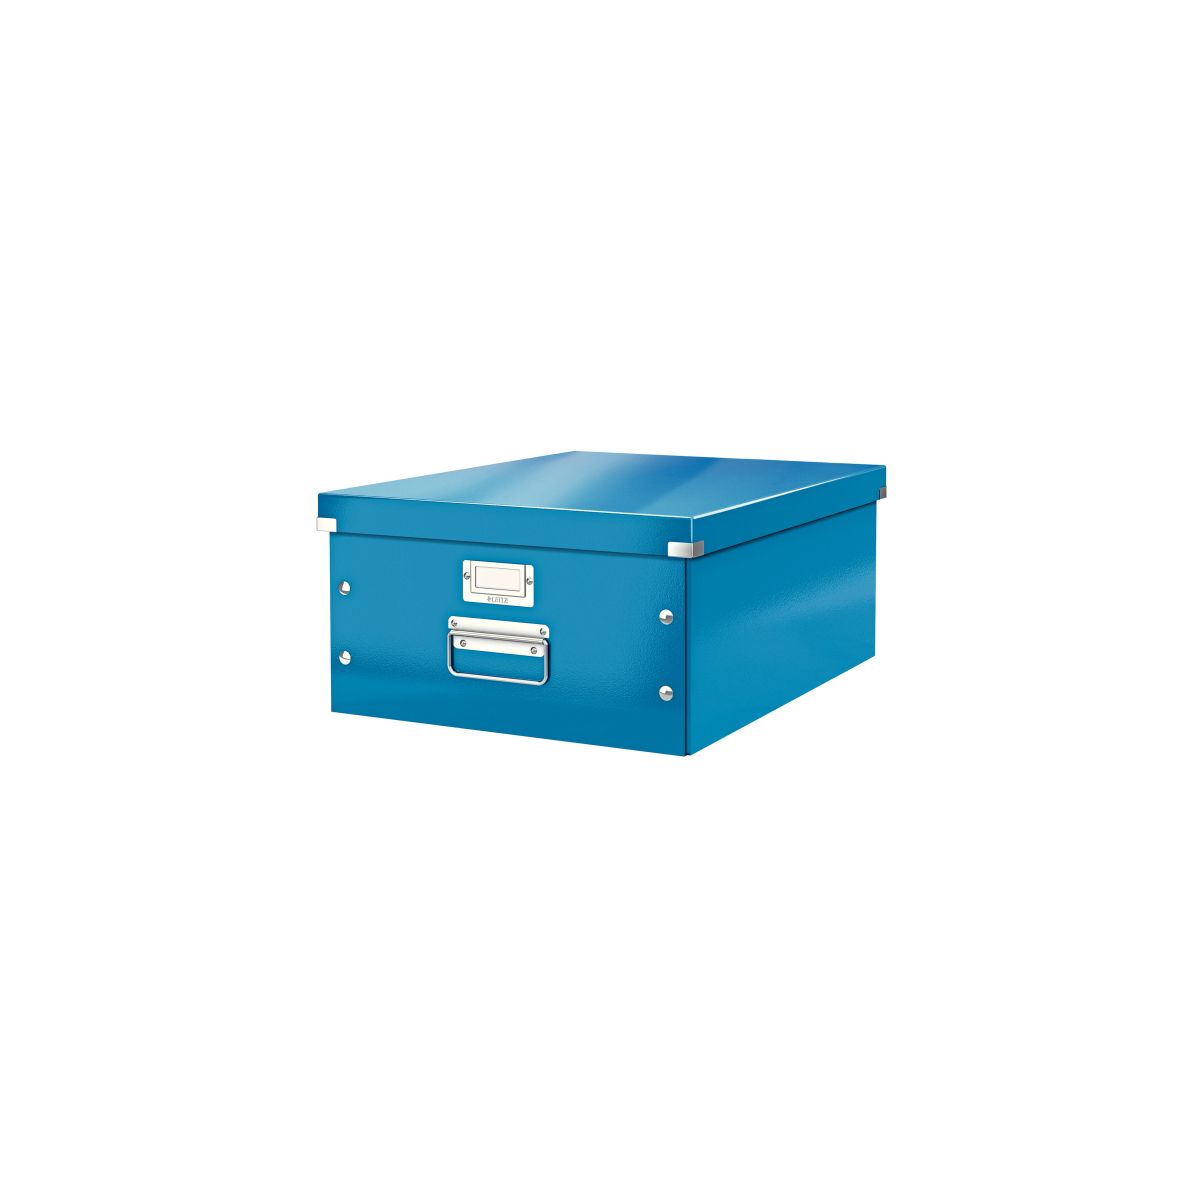 Pudło archiwizacyjne Click & Store A3 niebieski karton [mm:] 369x200x 484 Leitz (60450036)